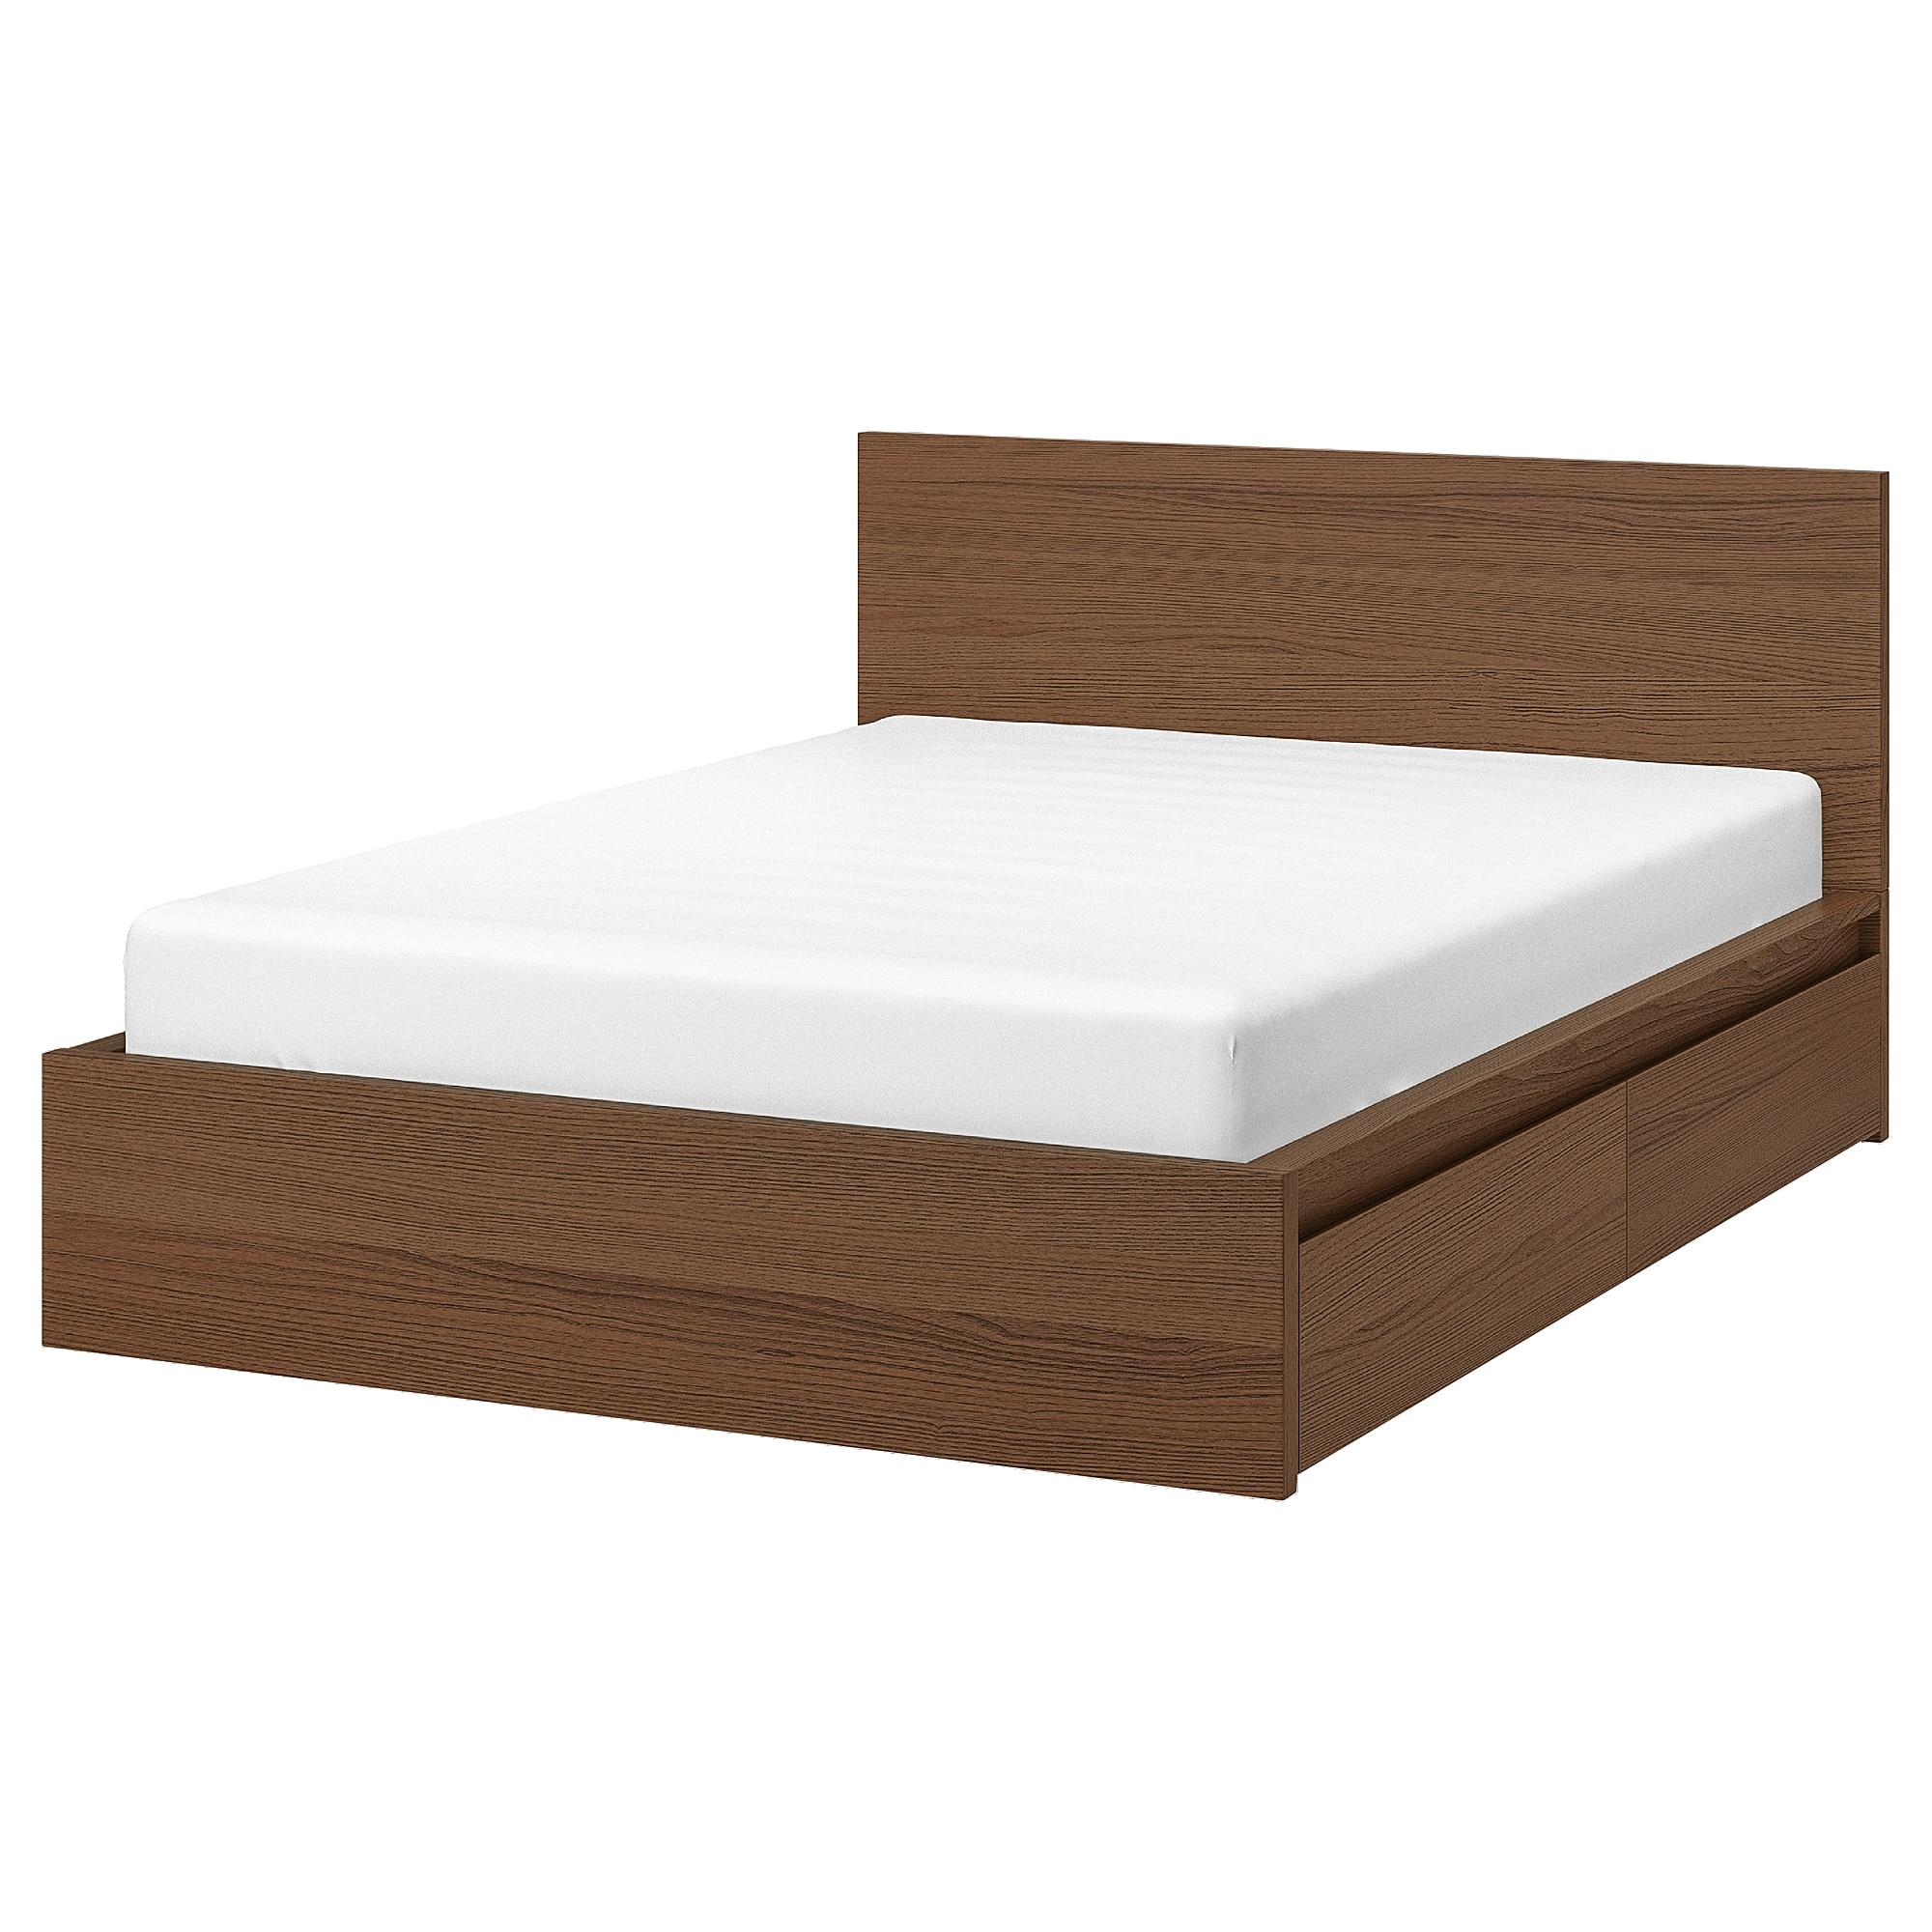 [ด่วน!! โปรโมชั่นมีจำนวนจำกัด] โครงเตียงสูง+กล่องเก็บของ 4 ใบสินค้าดี ราคาถูก จากแผนก เตียงนอนและที่นอน